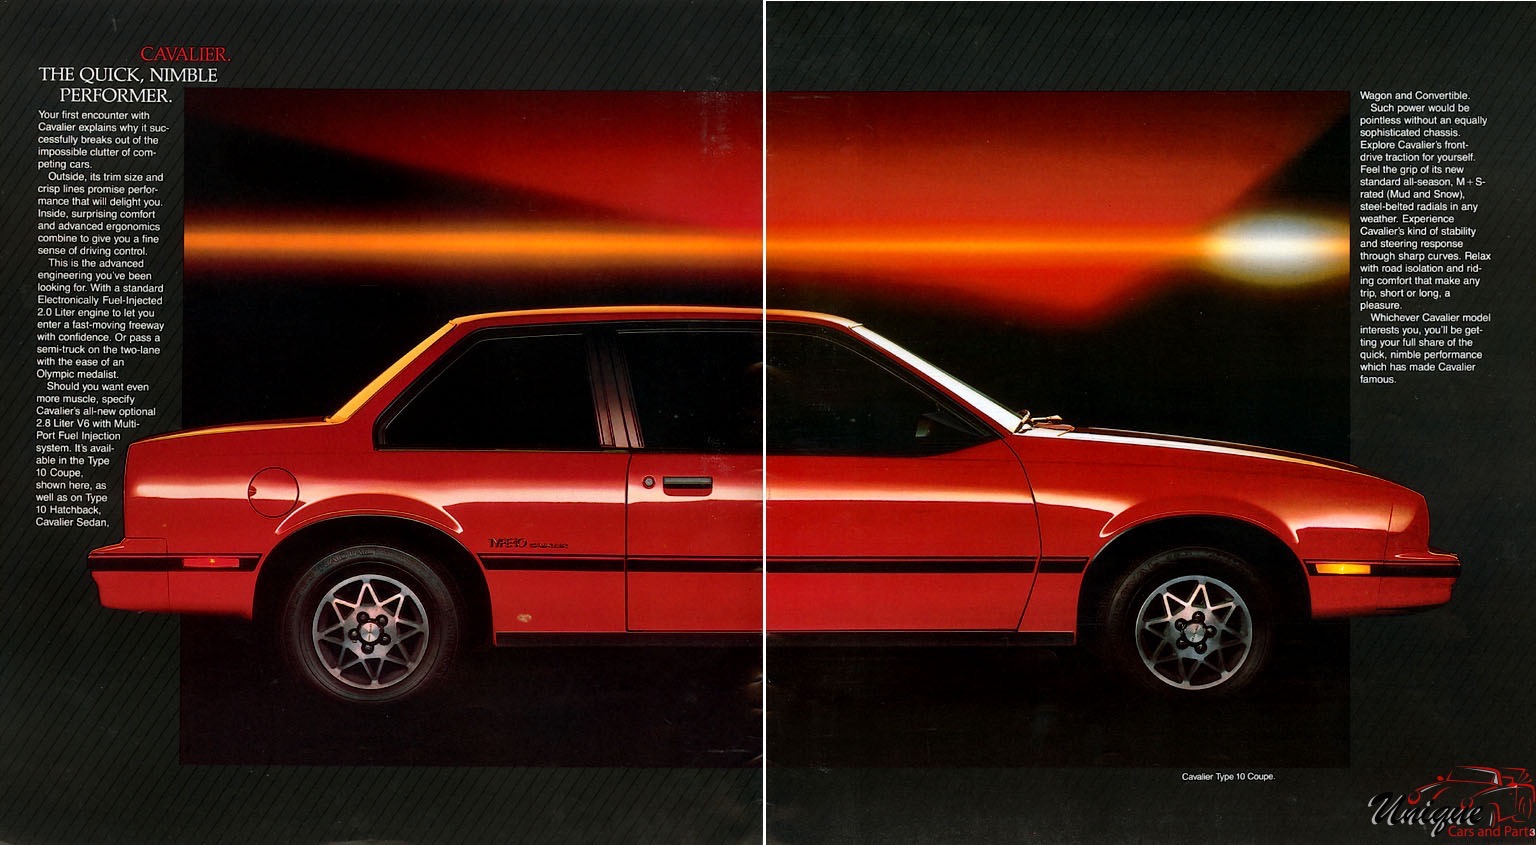 1985 Chevrolet Cavalier Brochure Page 3